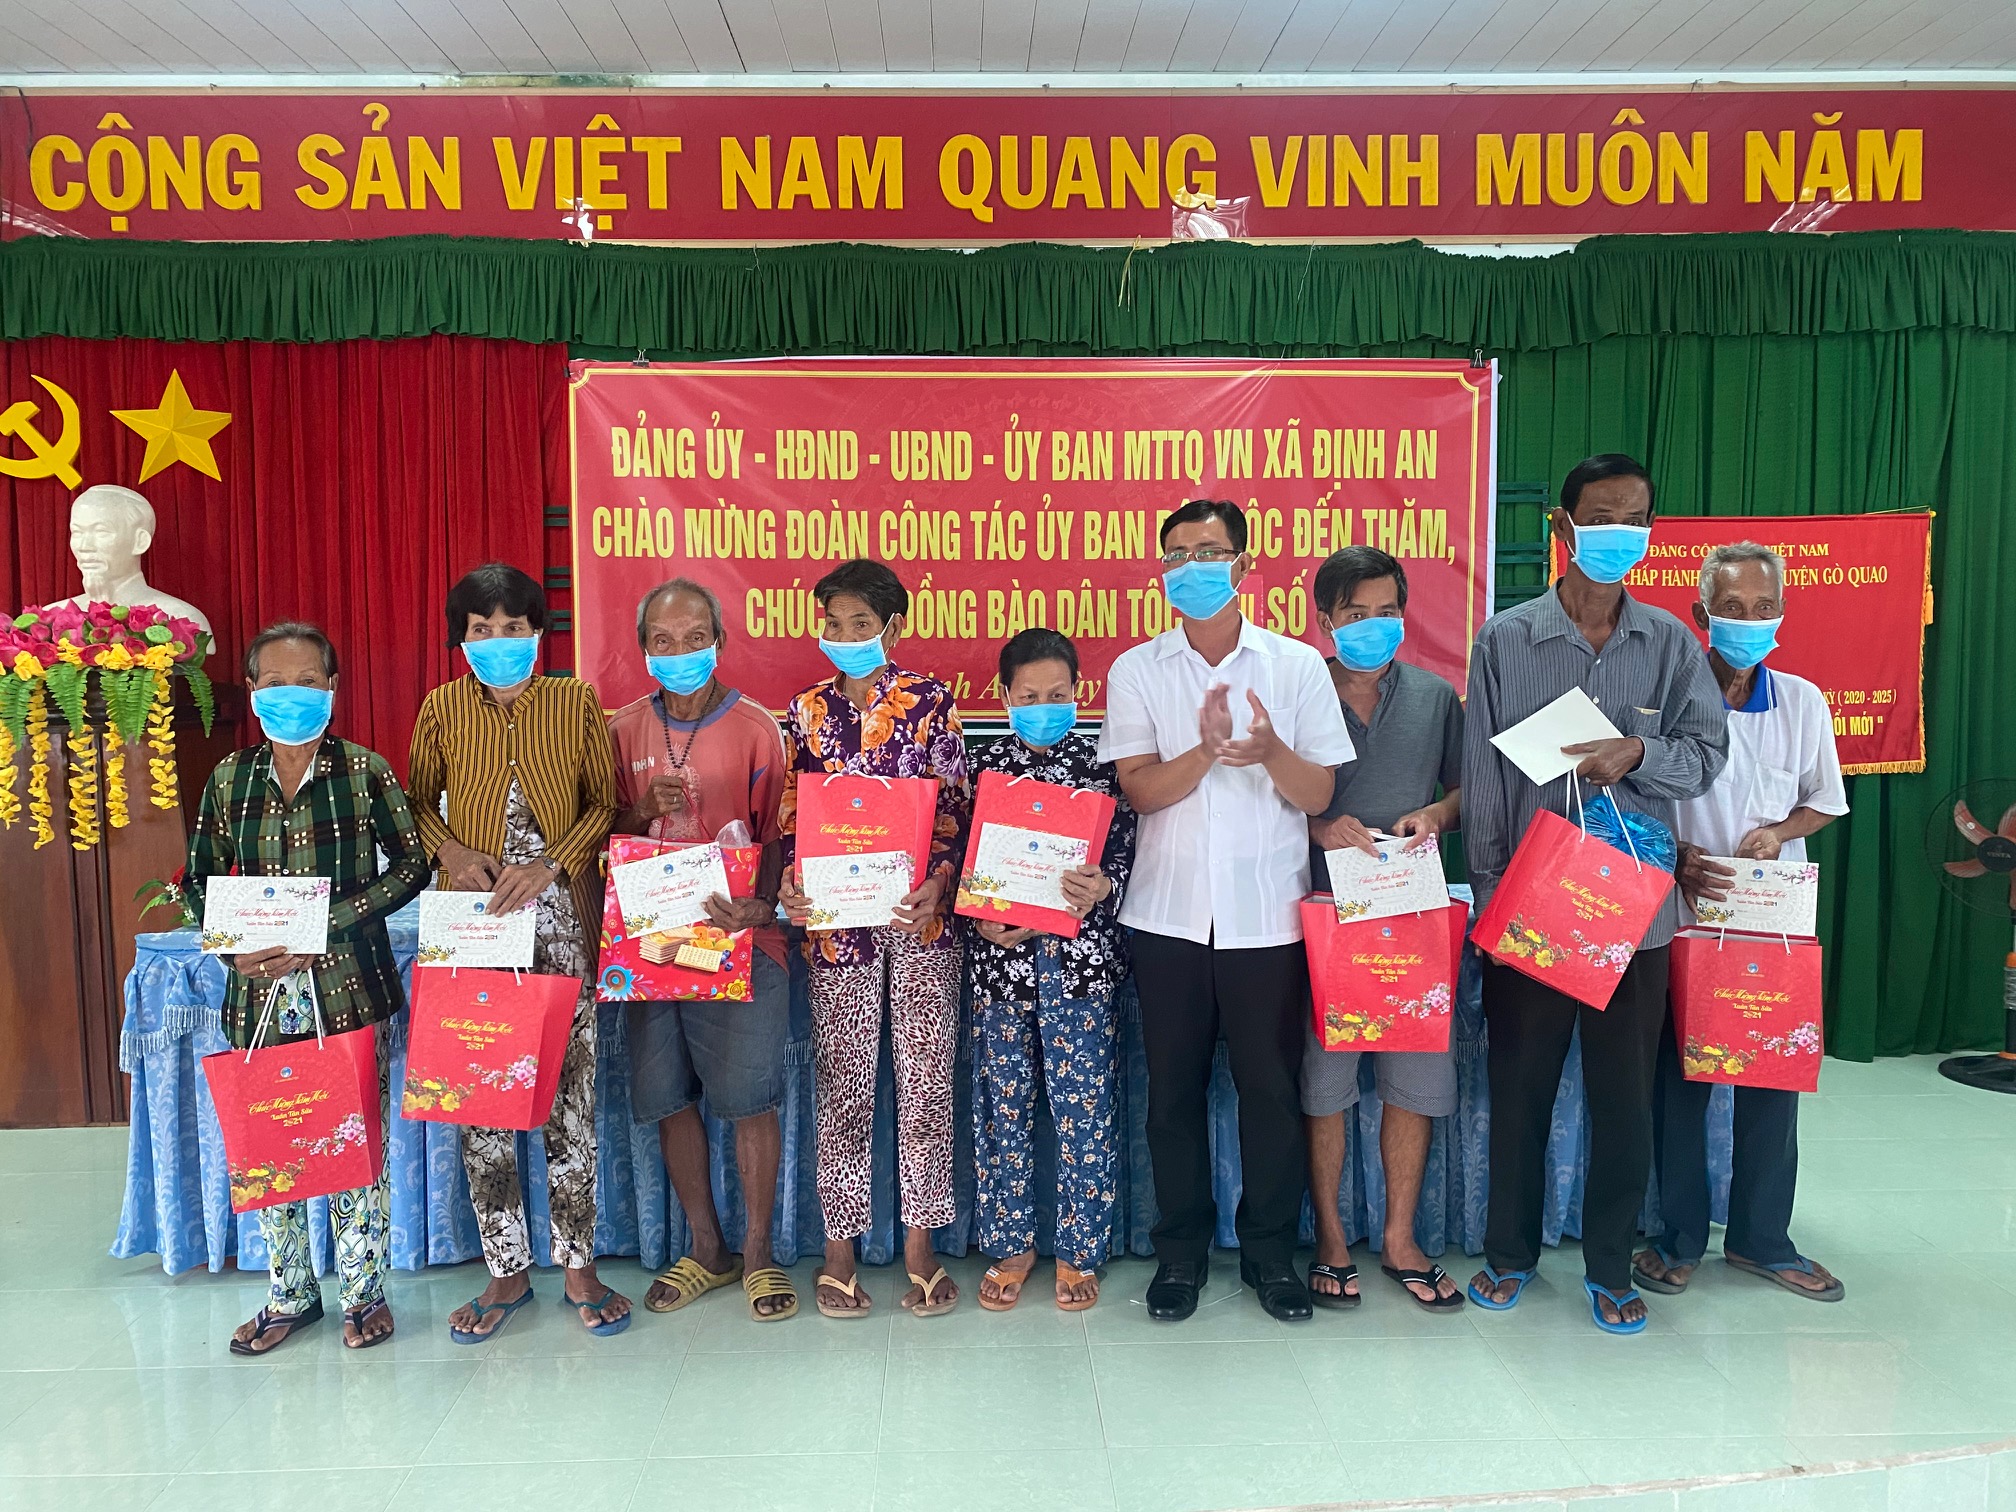 Các phần quà được trao tận tay những hộ gia đình khó khăn trên địa bàn tỉnh Kiên Giang